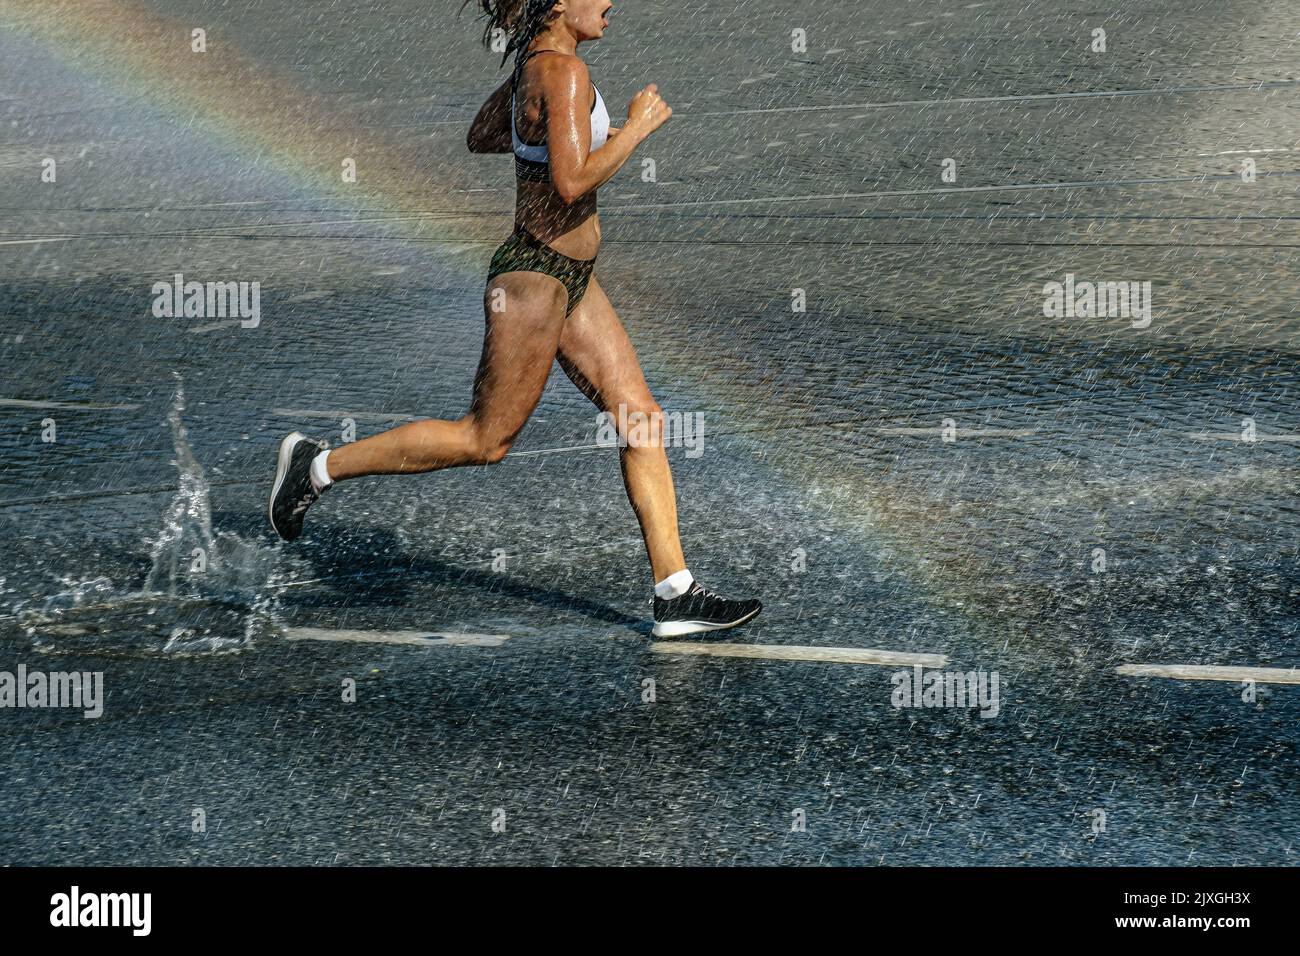 female runner run in water spray and rainbow Stock Photo